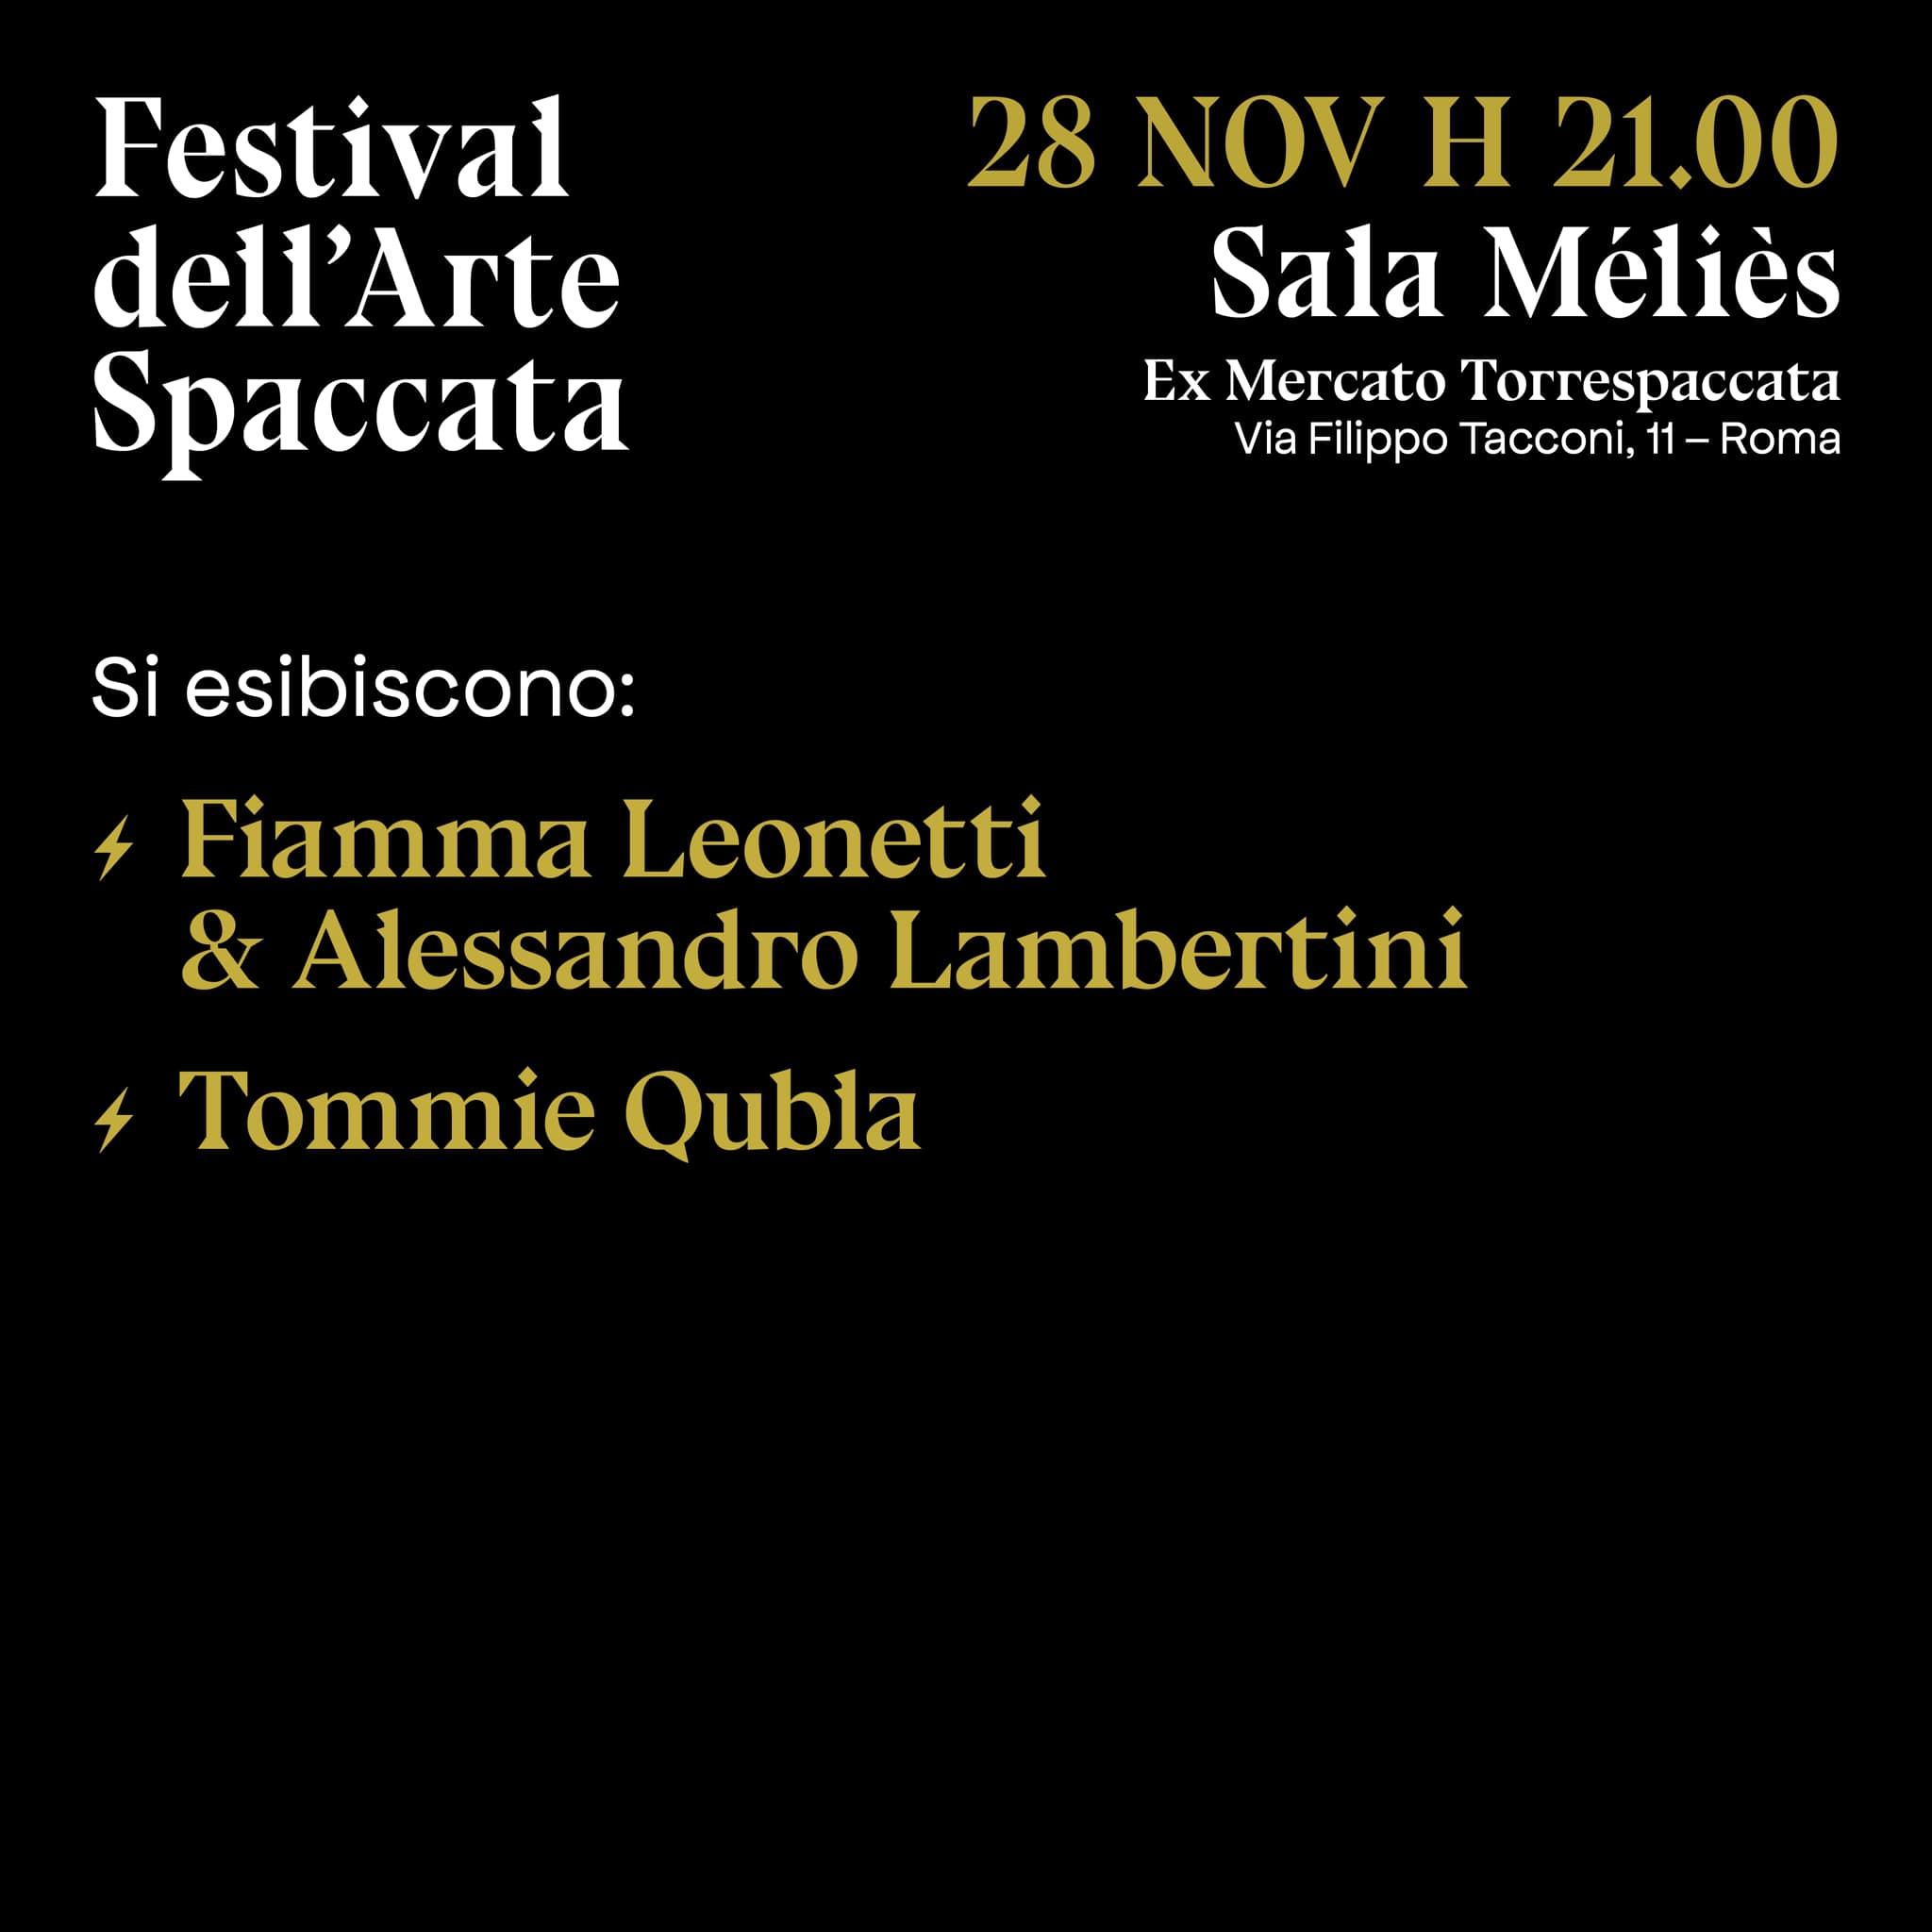 Festival dell'Arte Spaccata, Arti visive e Musica, Artisti, 28 novembre 2021